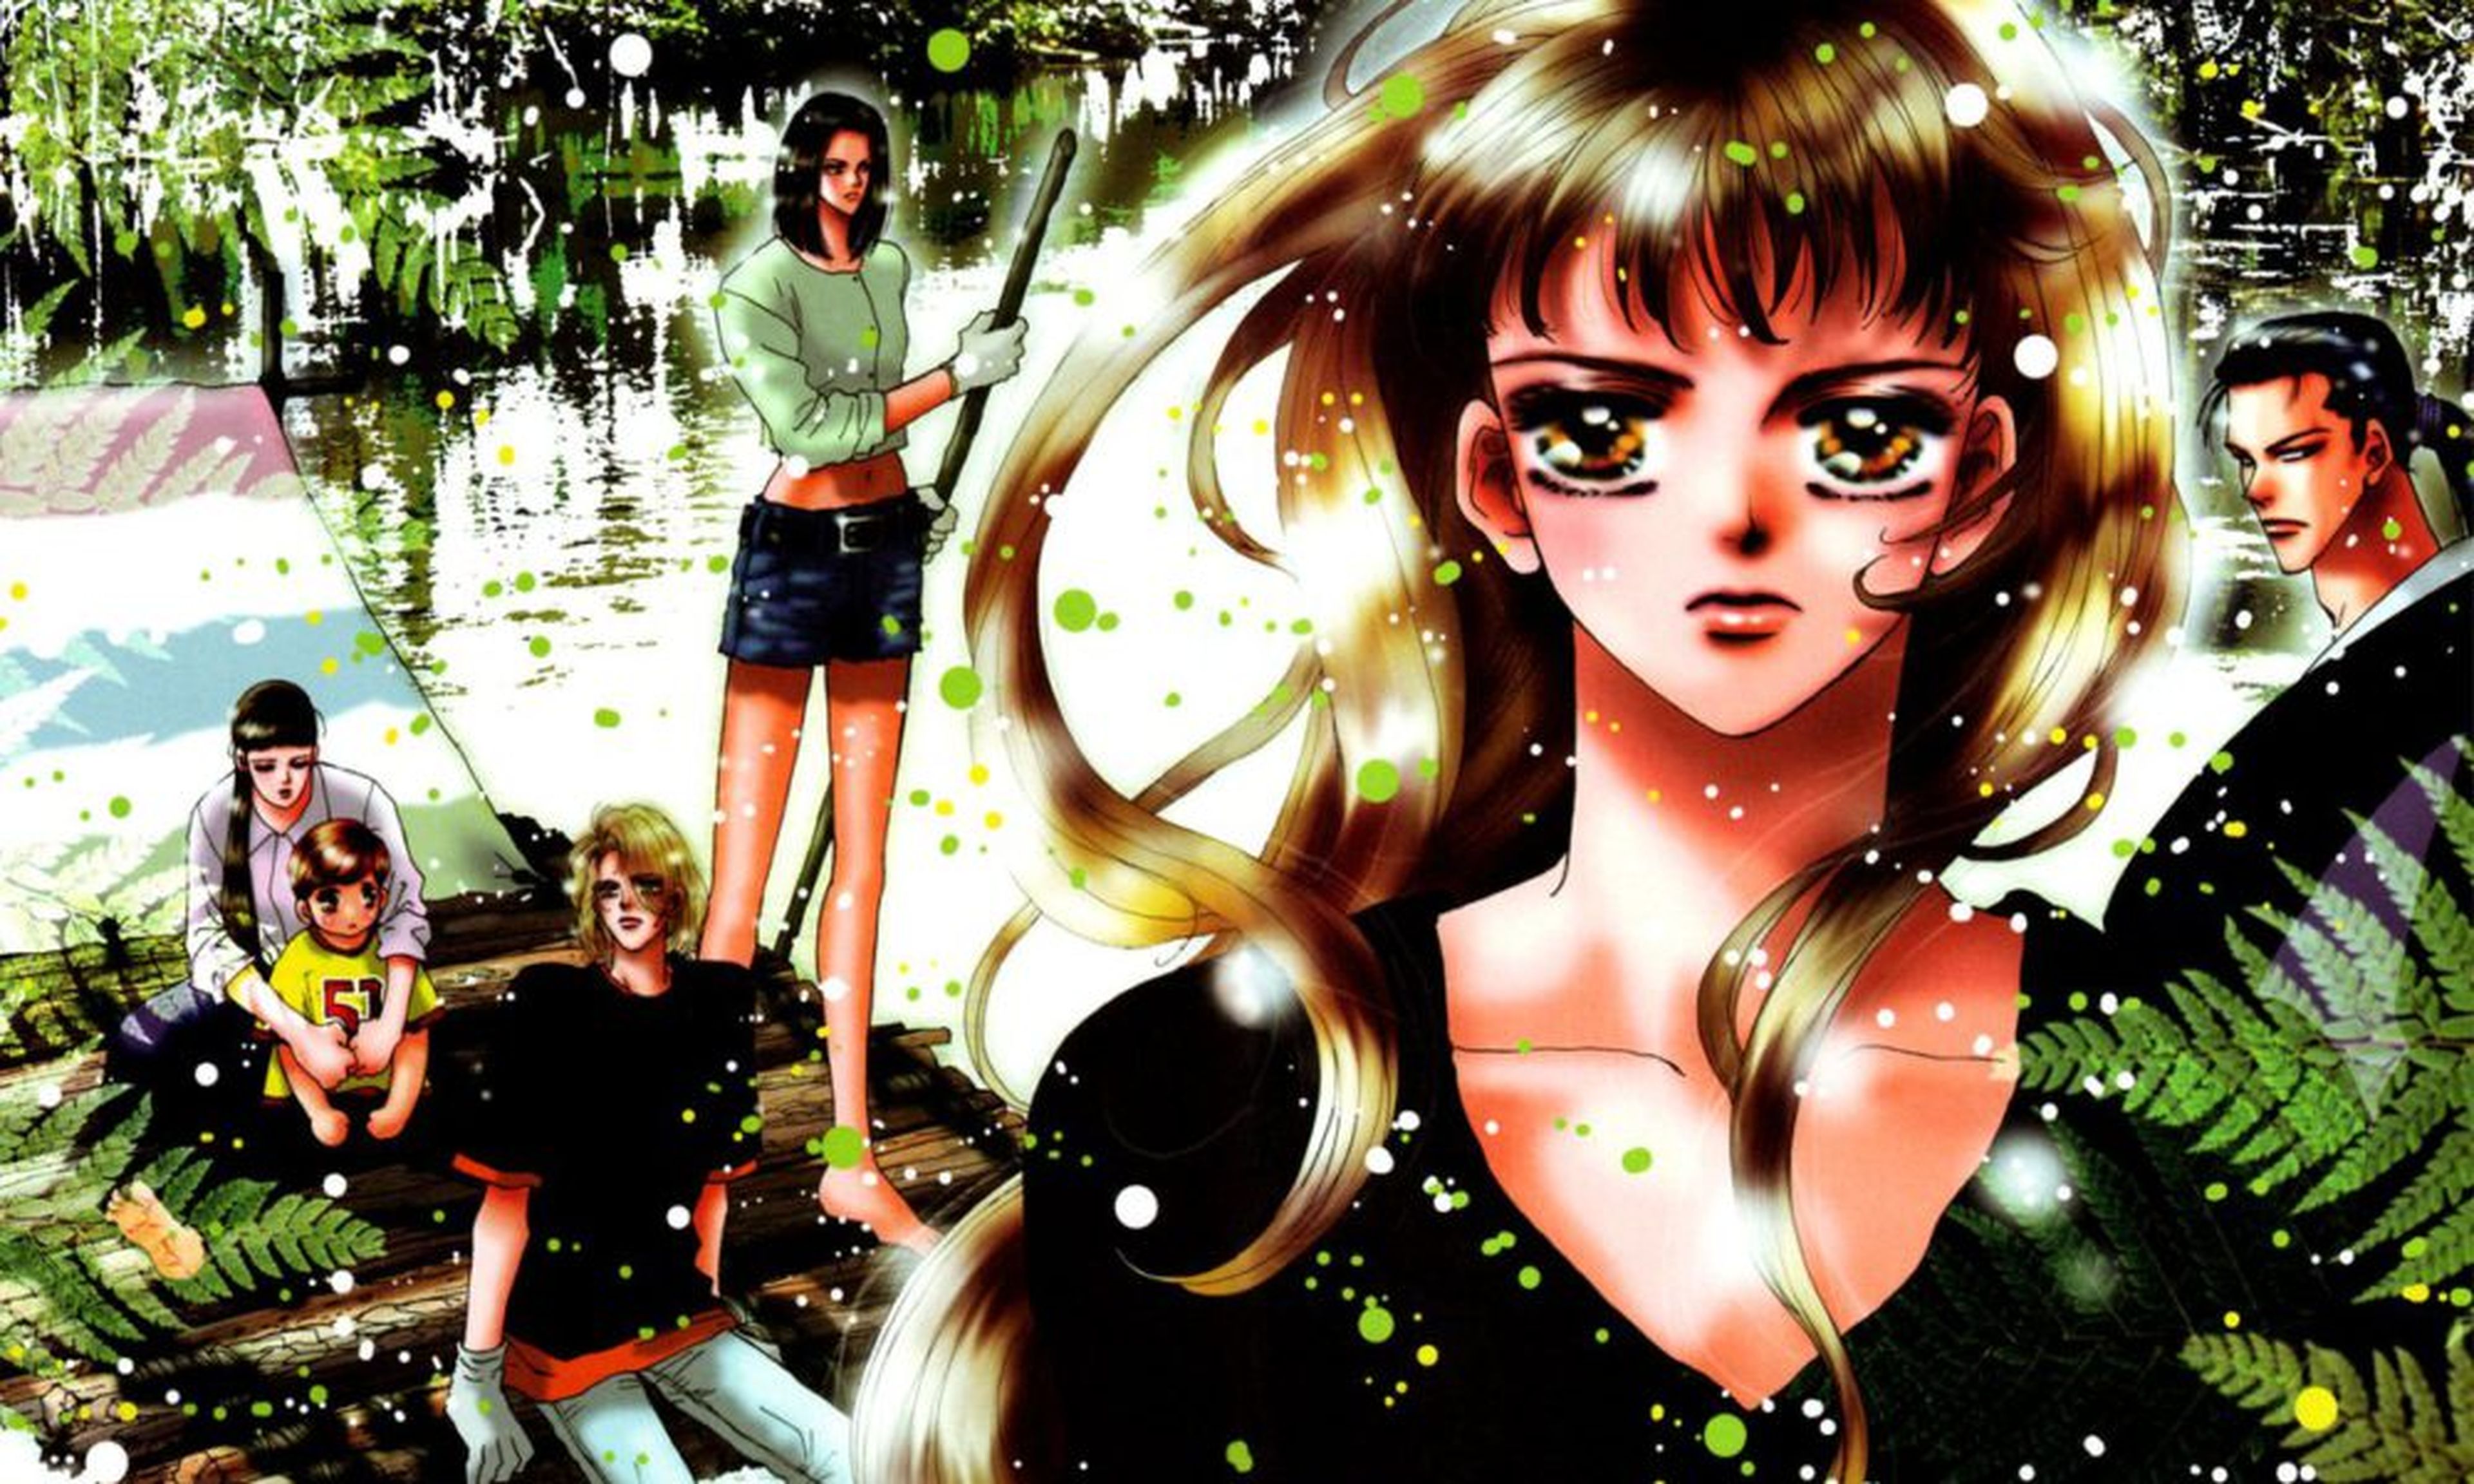 Arte original del manga 7 Seeds